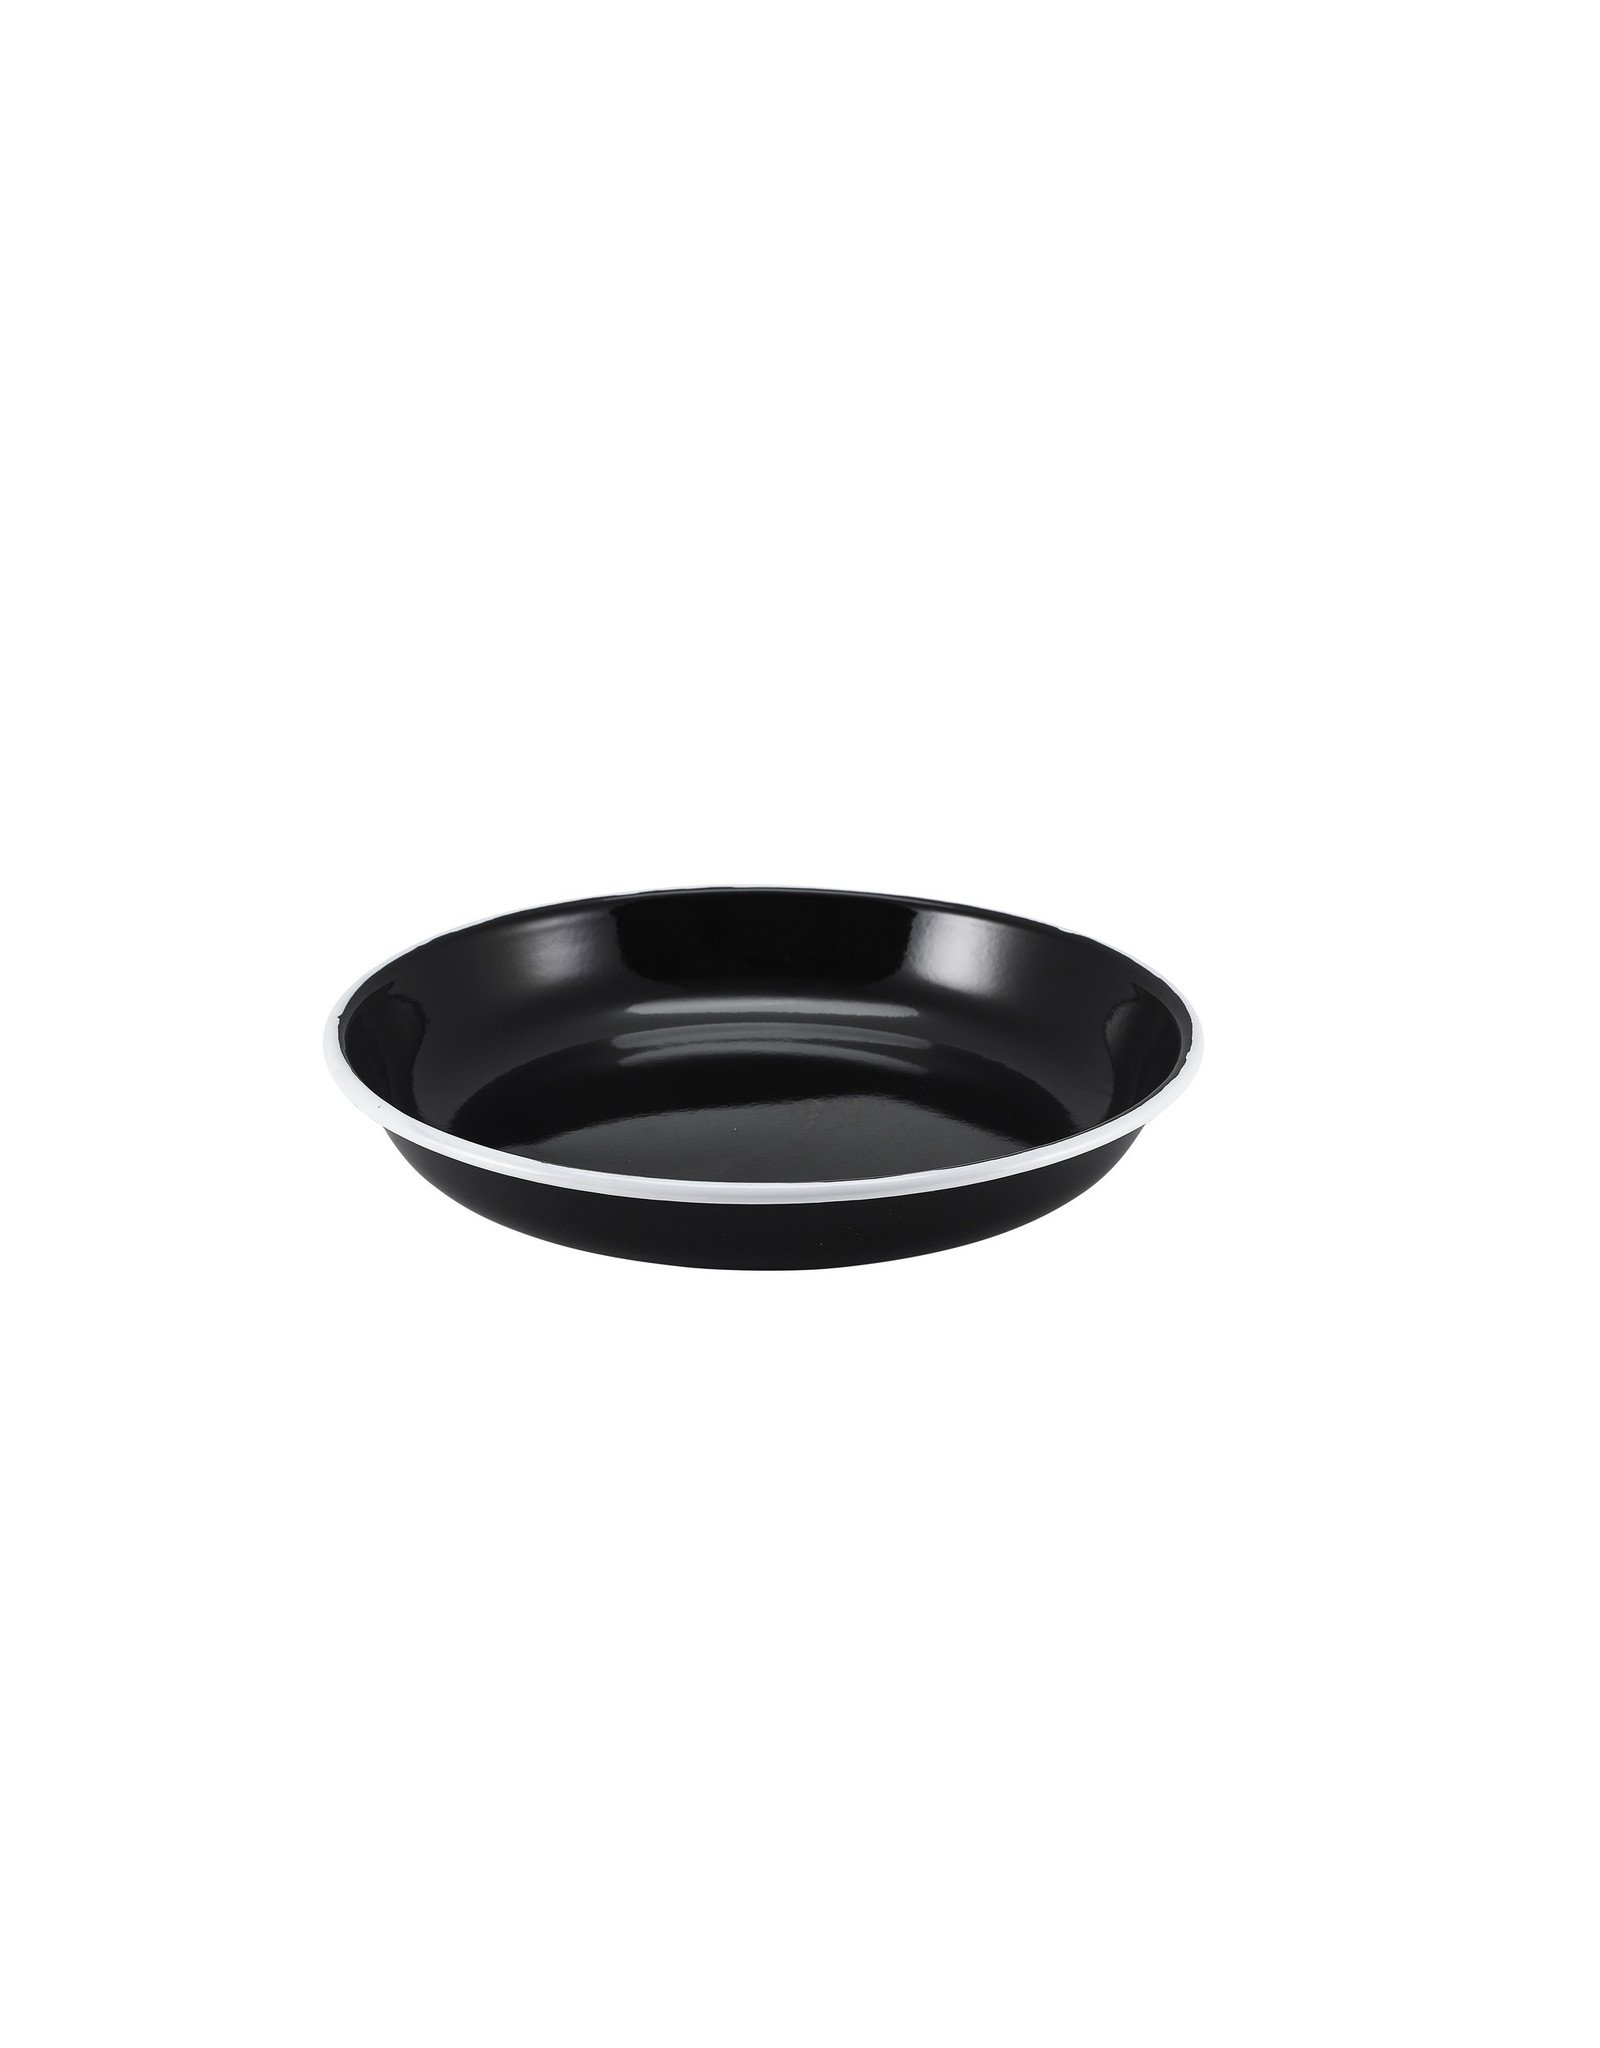 Stylepoint Enamel pasta plate black w/ white edge 20cm